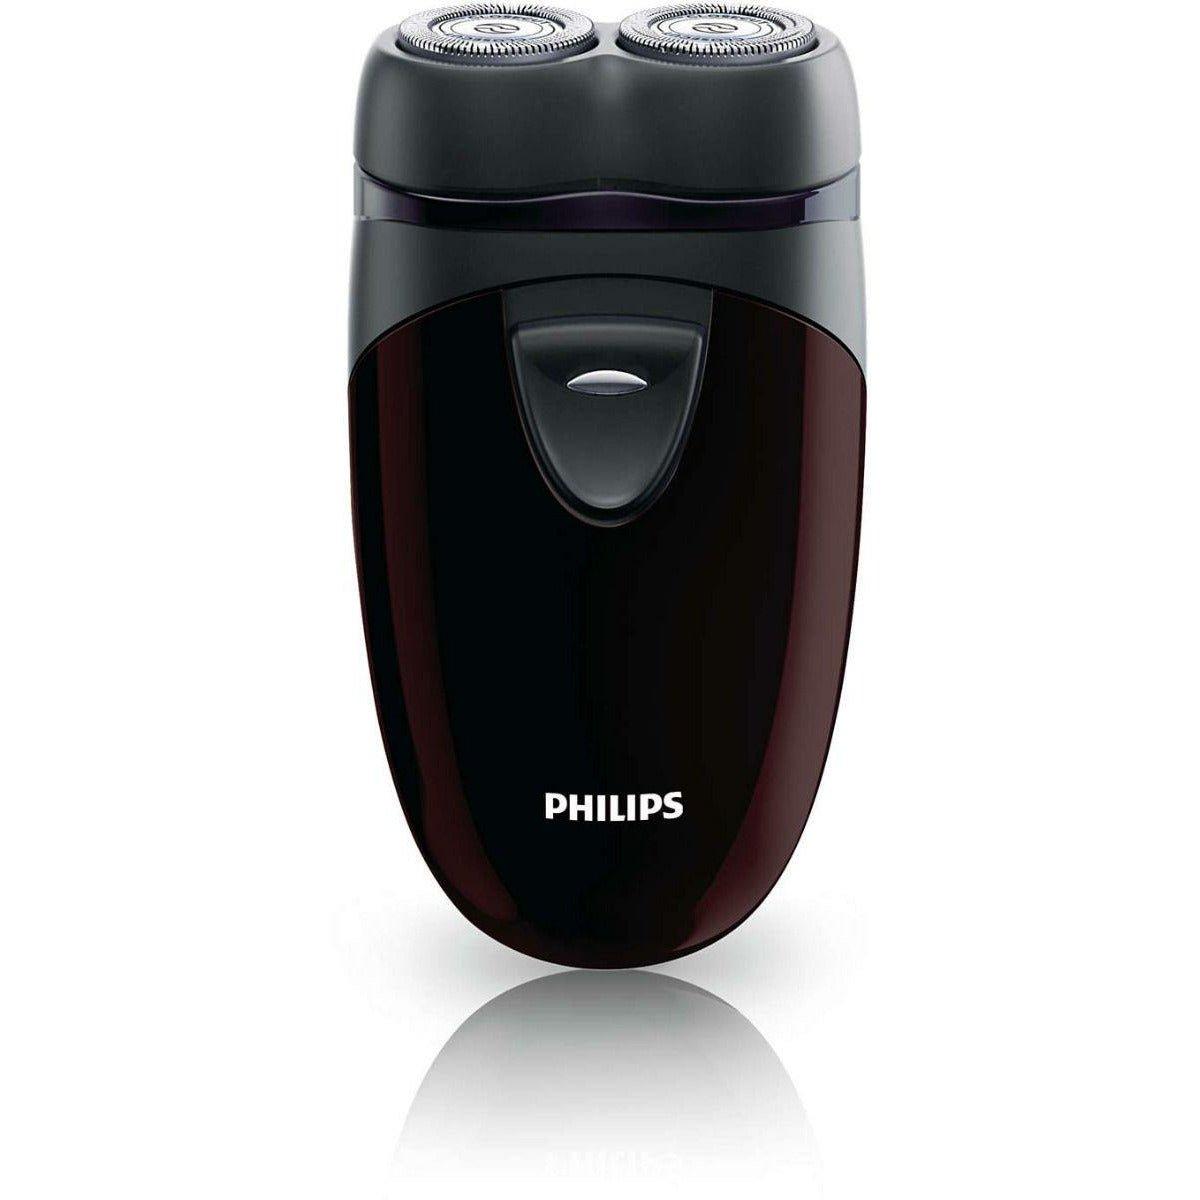 Philips PQ206-18 Shaver - New World